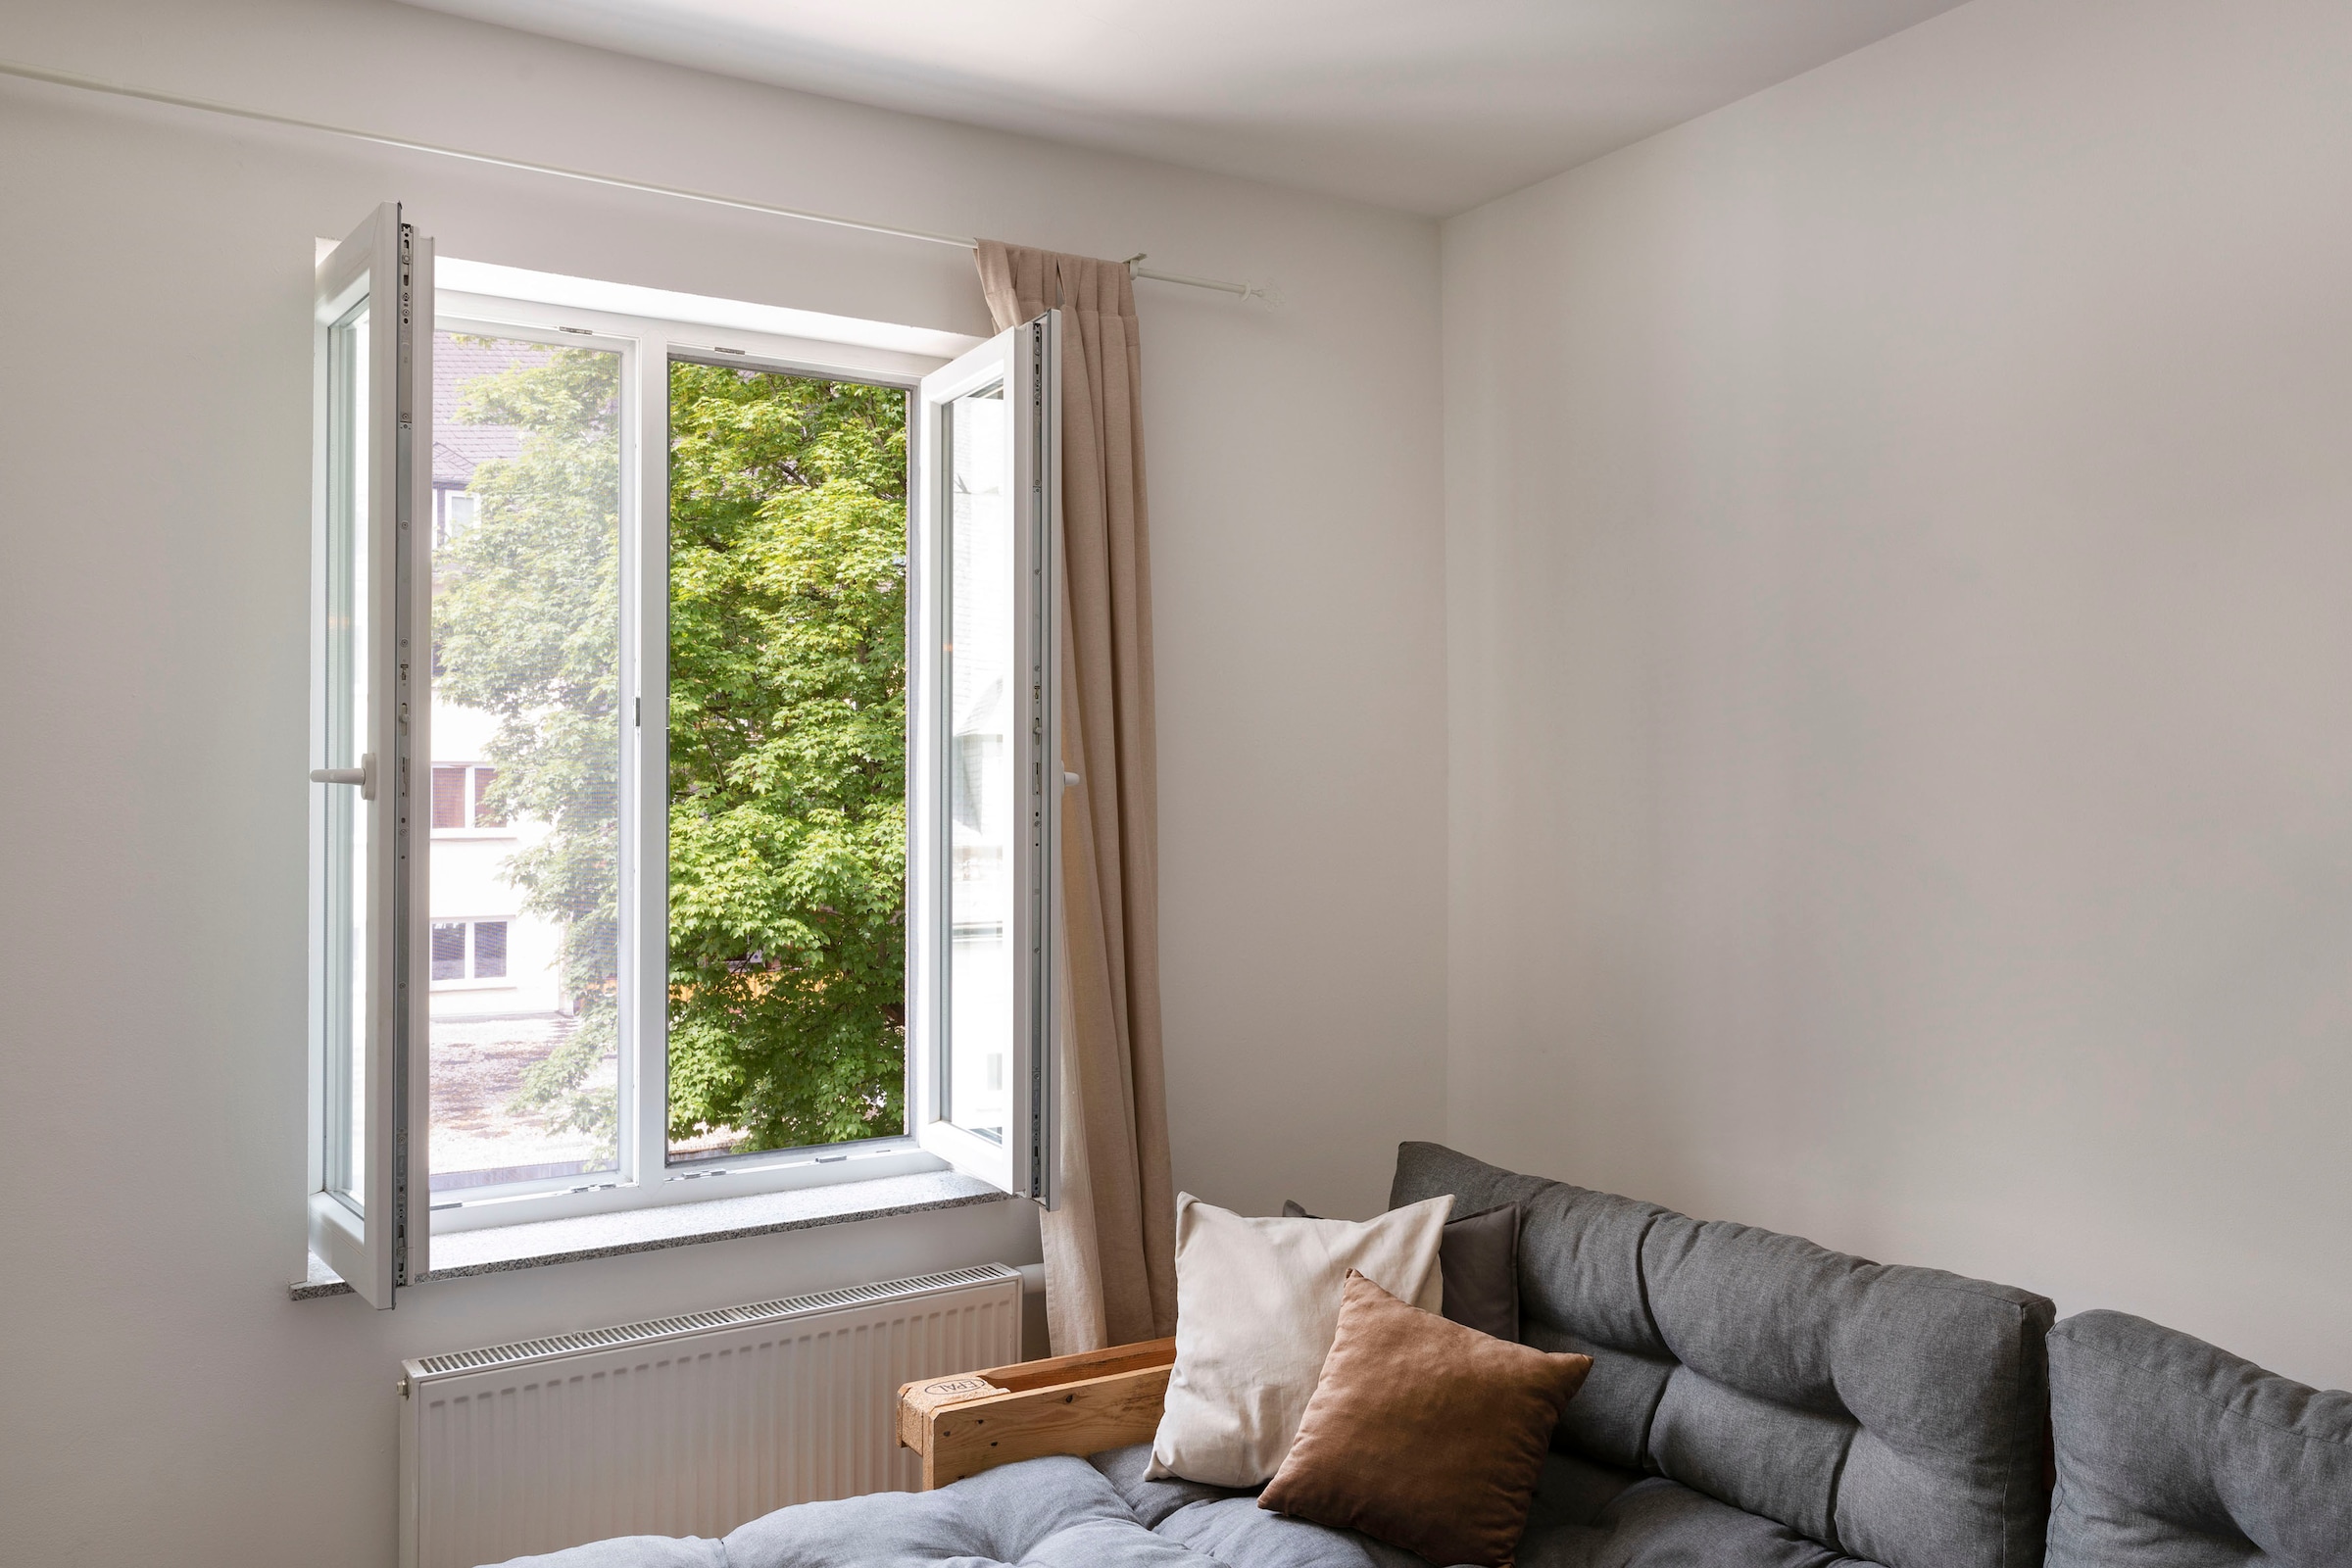 SCHELLENBERG Fliegengitter-Gewebe »50714«, mit Klettband, für Fenster, ohne bohren, 130x150 cm, weiß